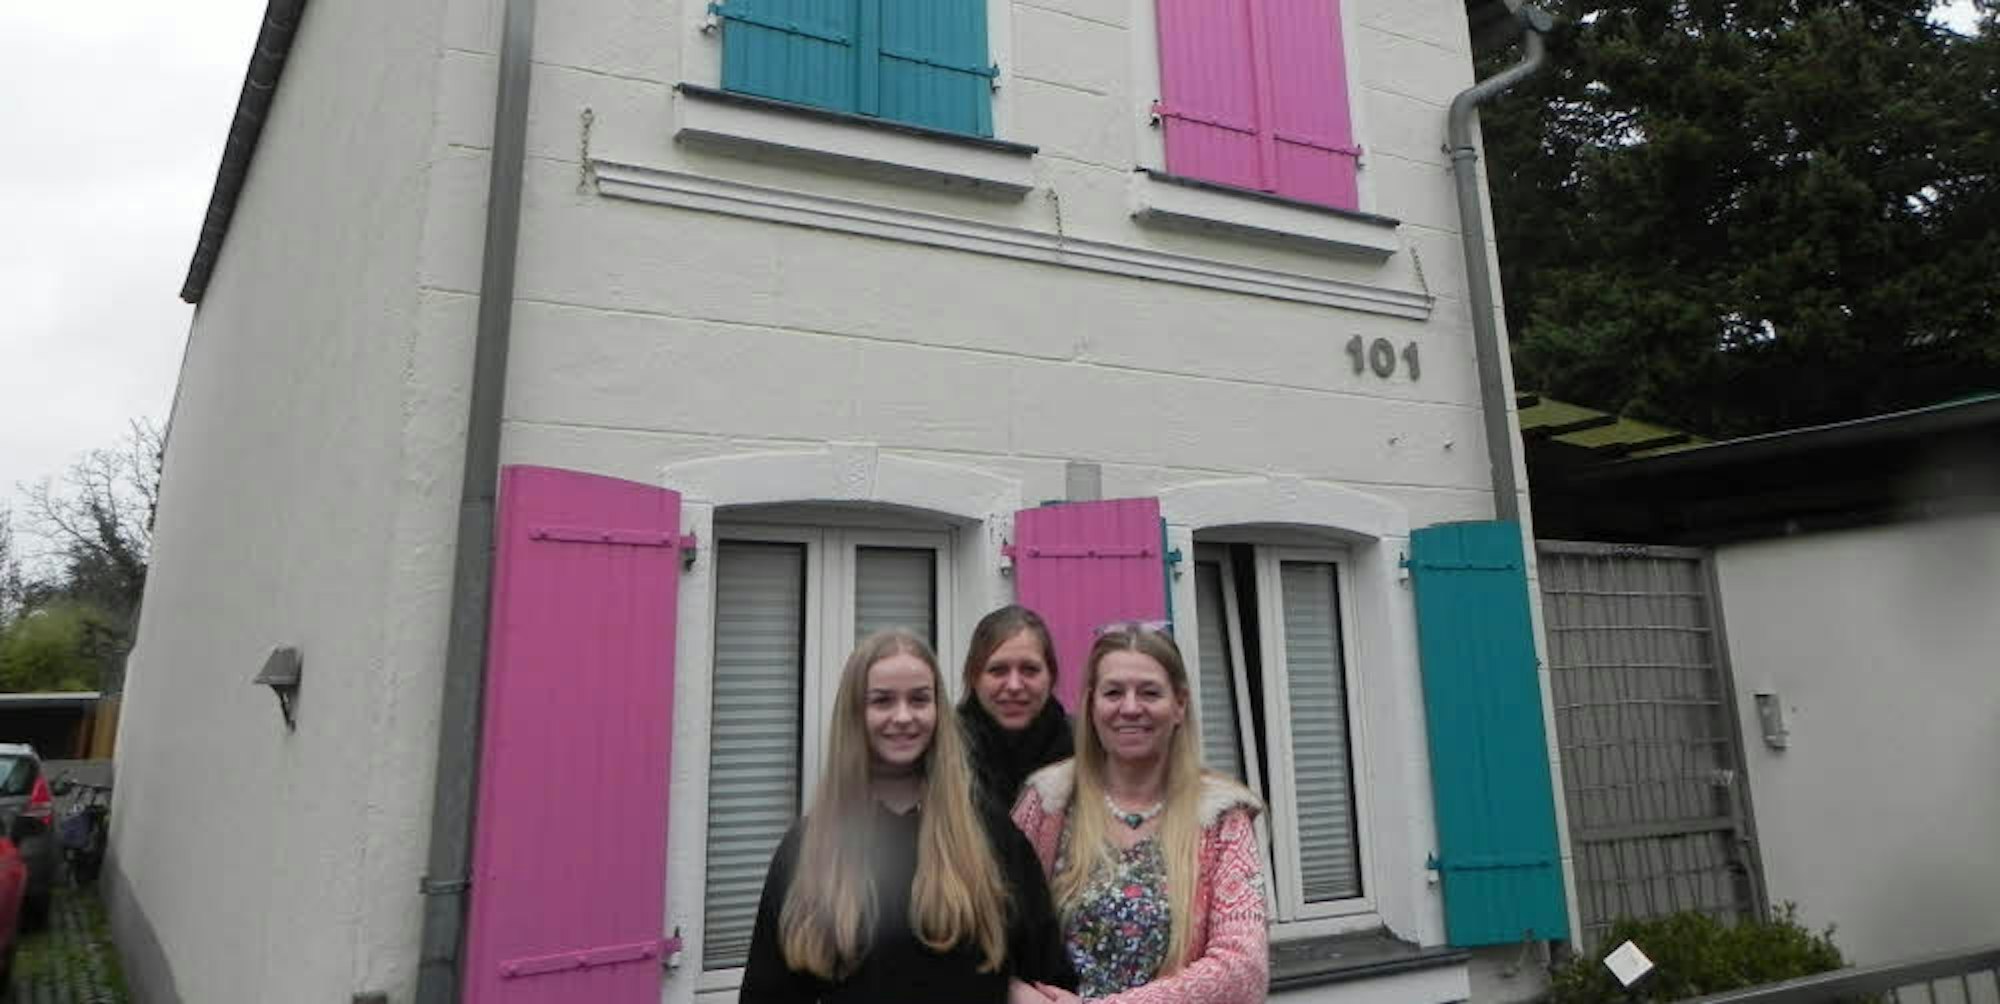 Gabi Weisner (r.) liebt Farbe und hat ihr Haus entsprechend umdekoriert.